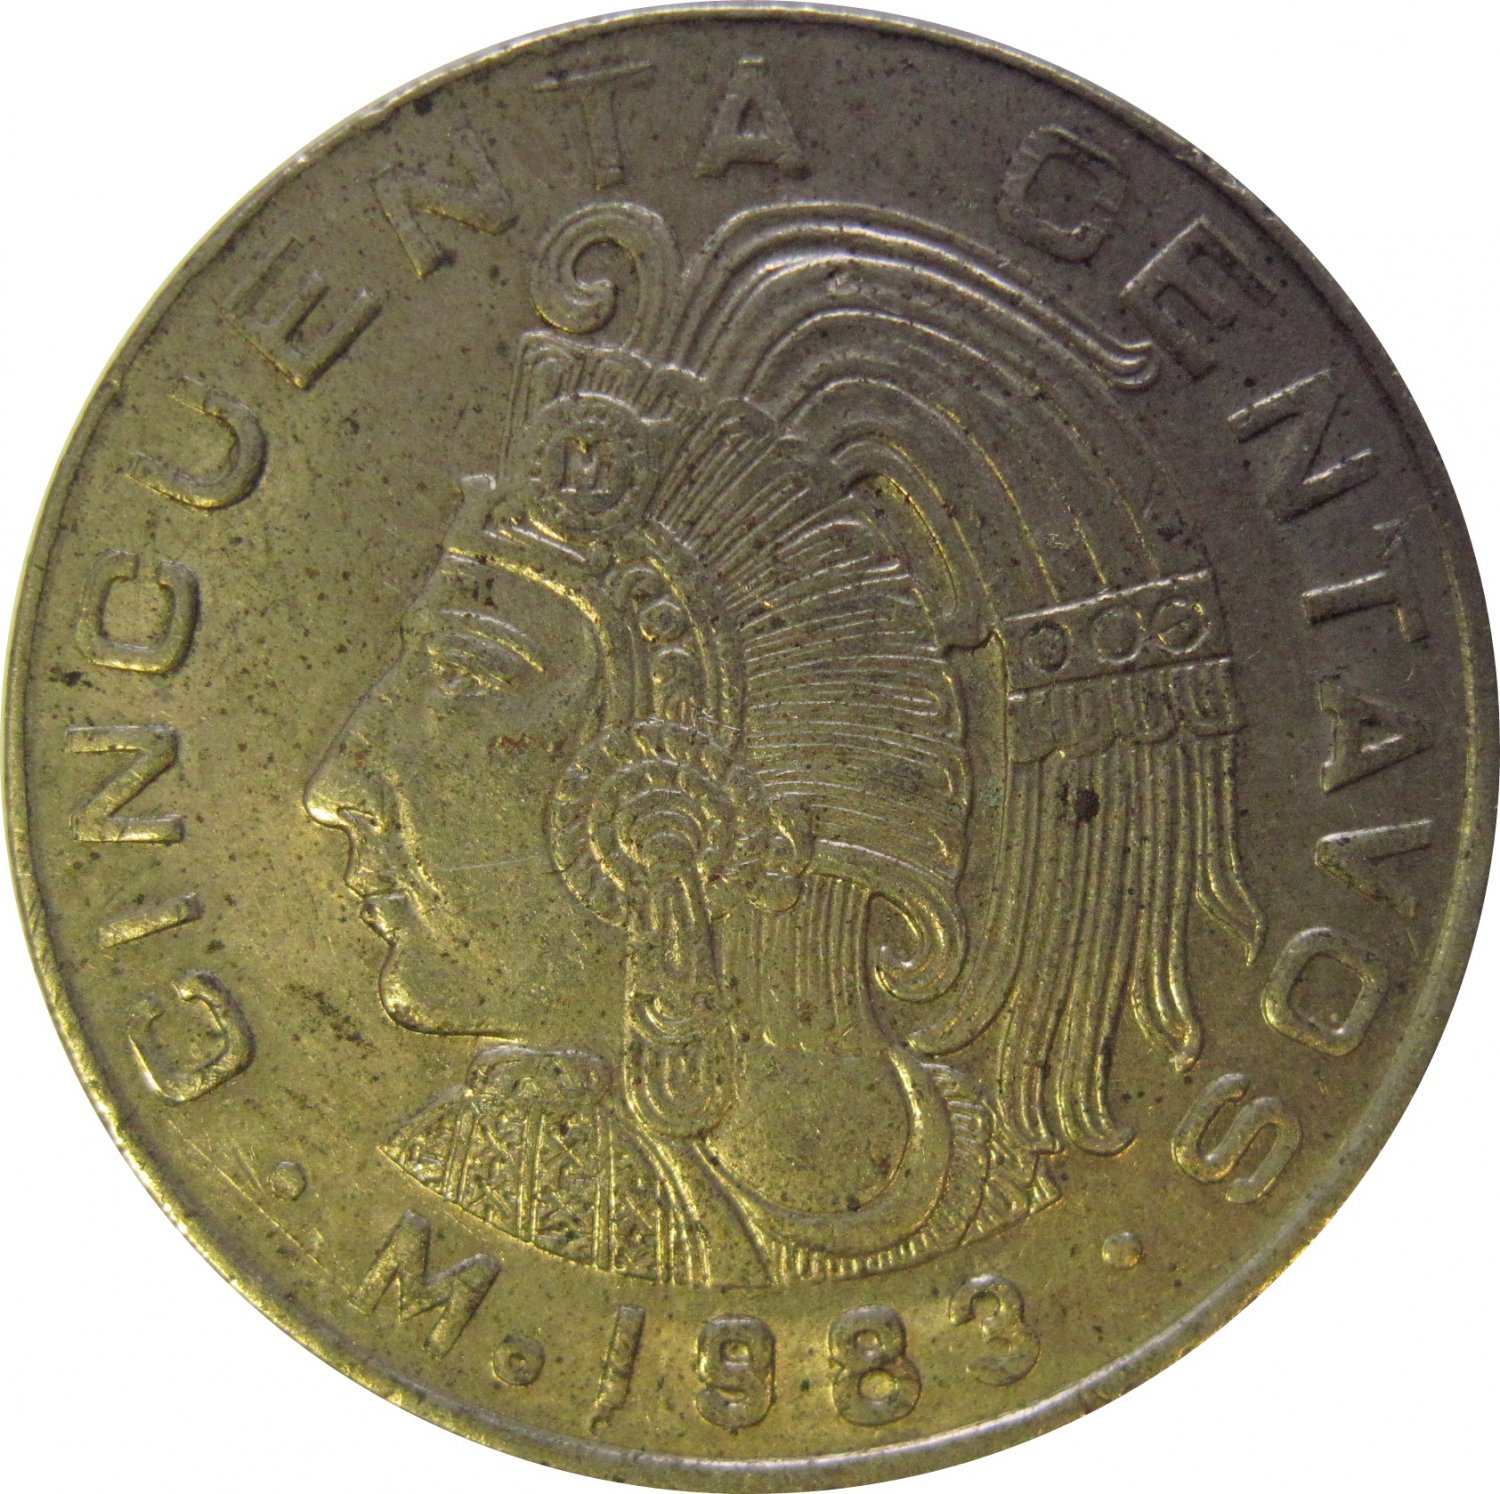 1983 Mexico 50 Centavos